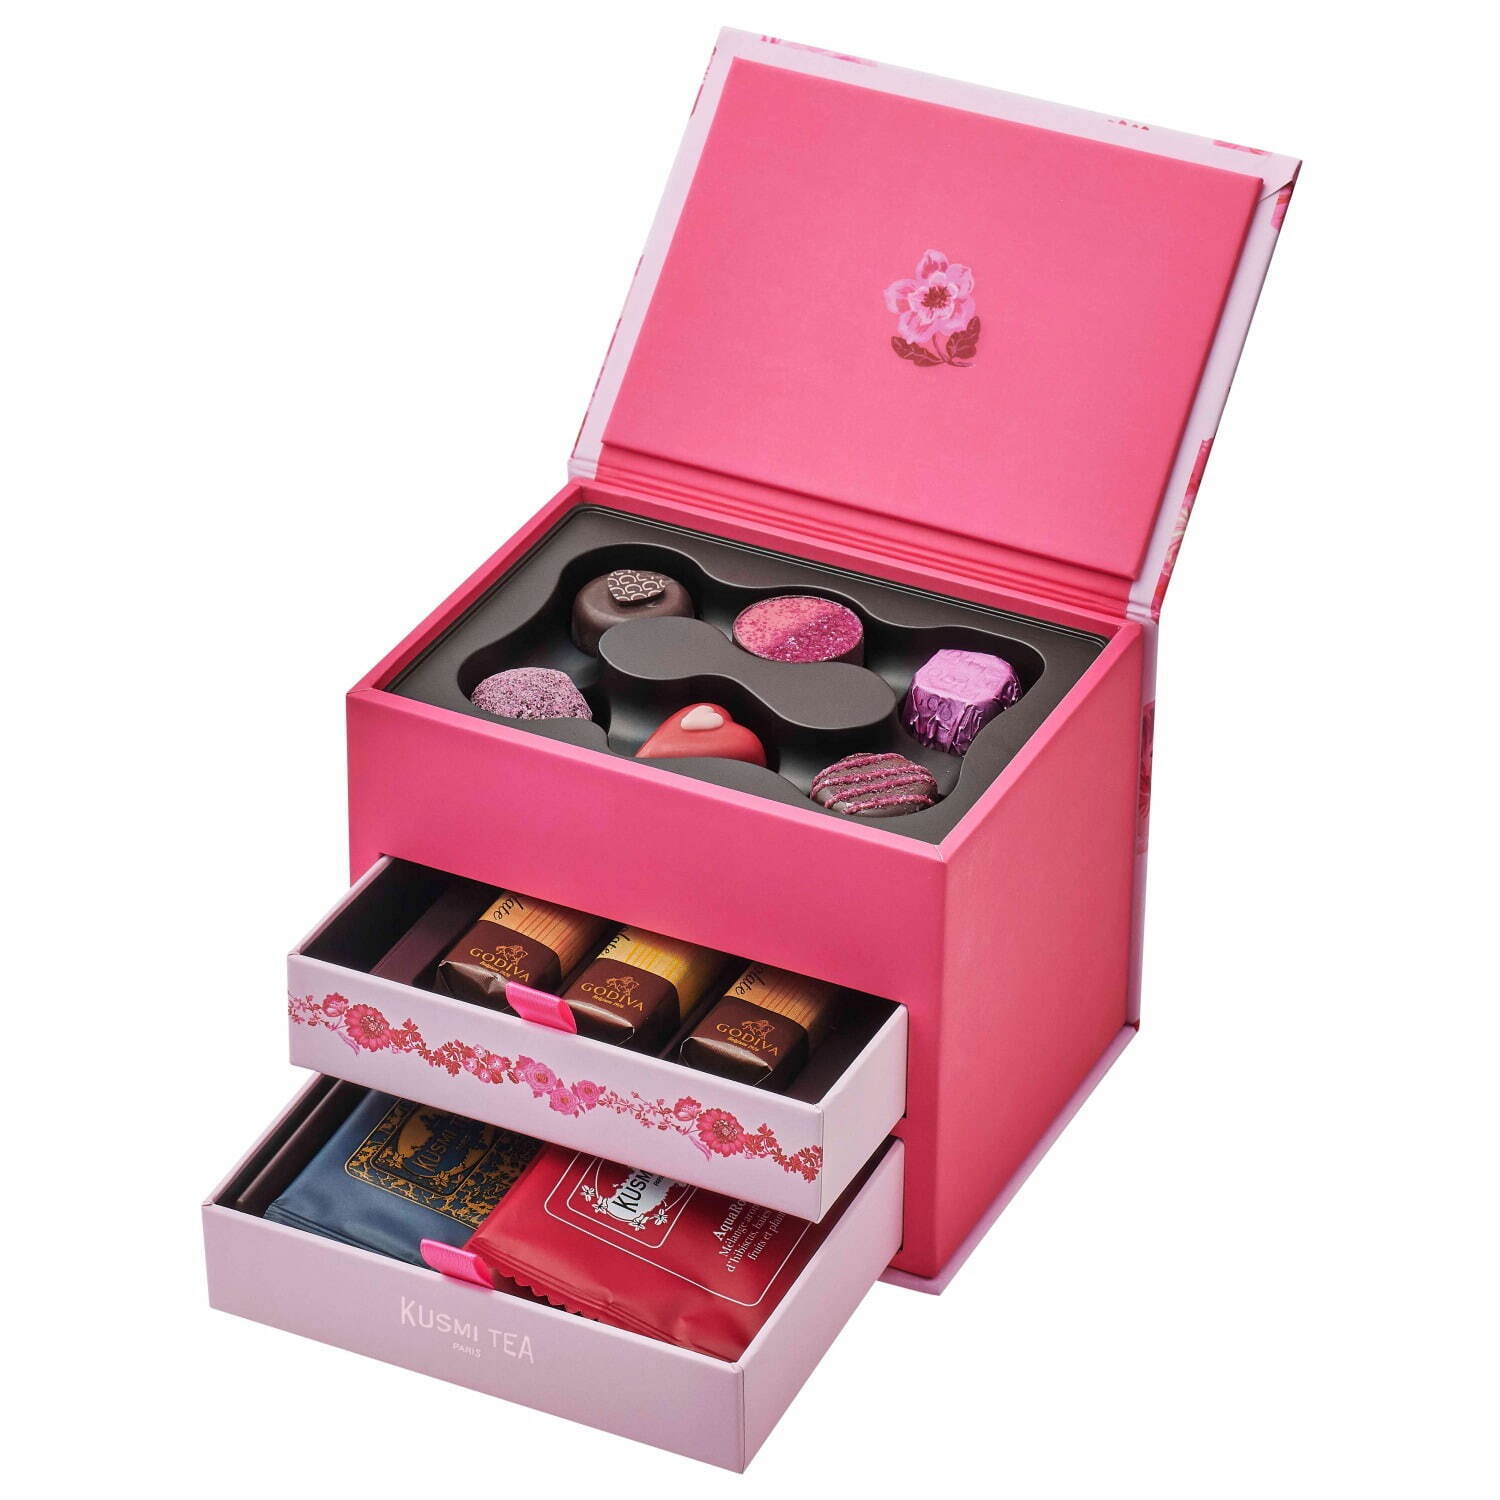 ゴディバのバレンタイン22 心ときめく ピンク 苺の限定チョコレート 青い鳥や煌めくハート缶 ファッションプレス